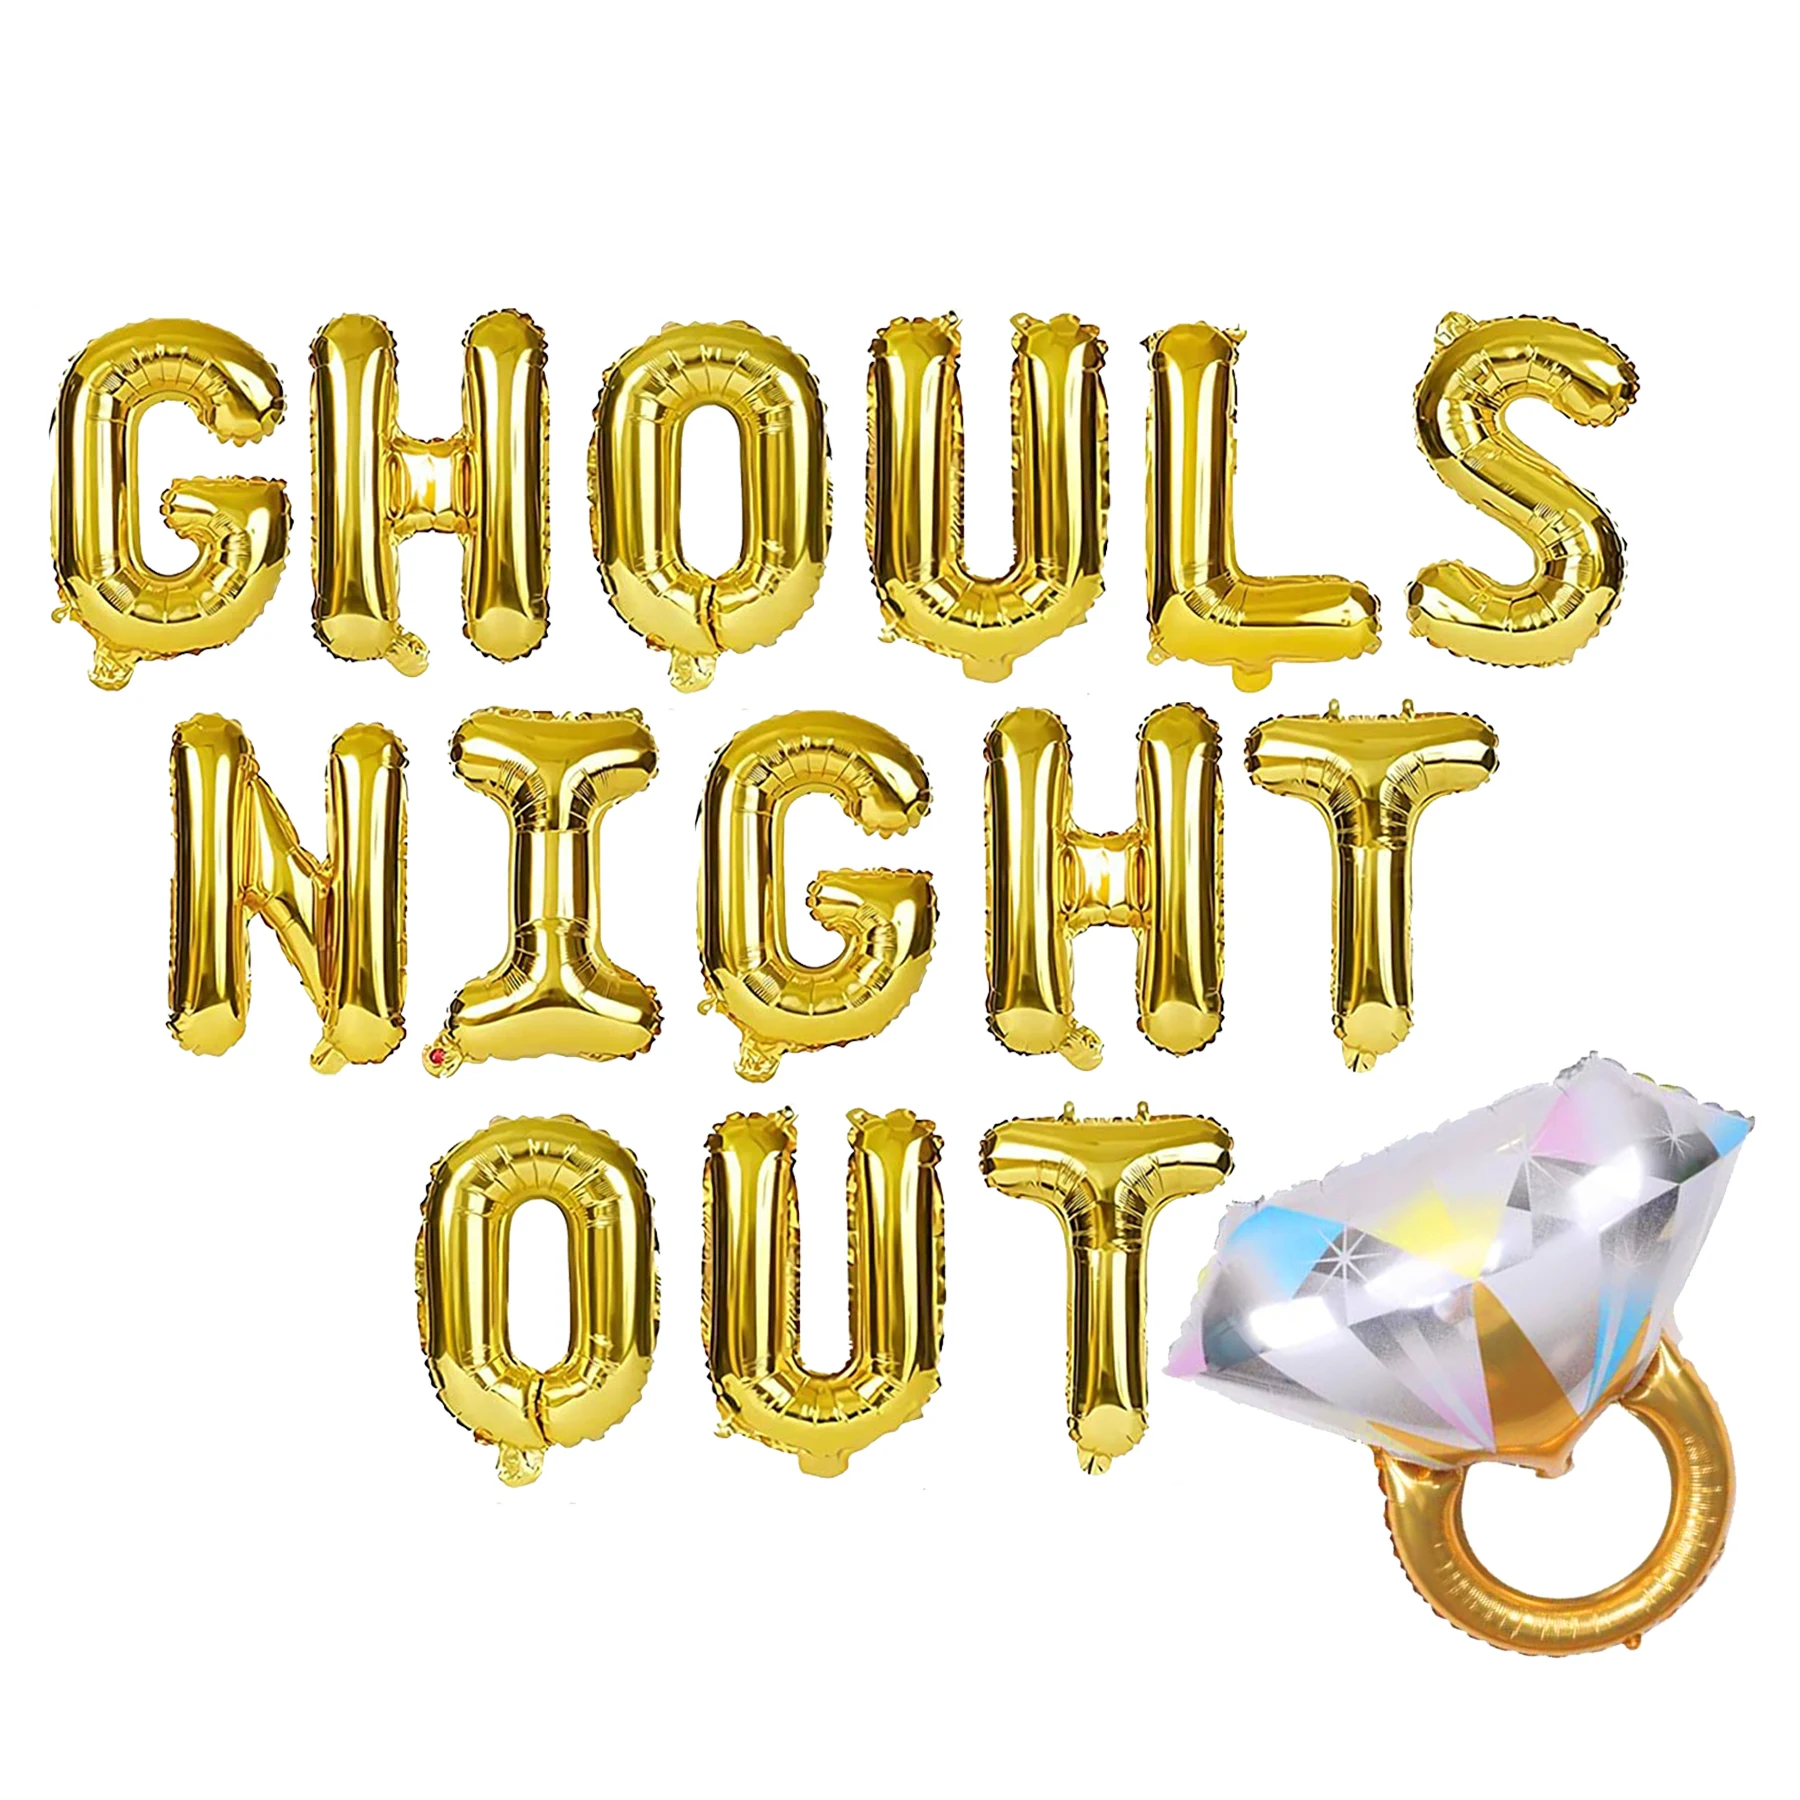 

Sursurprise Ghouls шар для вечеринки, баннер для Хэллоуина, девичника, украшения для вечеринки, кольцо с бриллиантами, воздушный шар, принадлежности ...